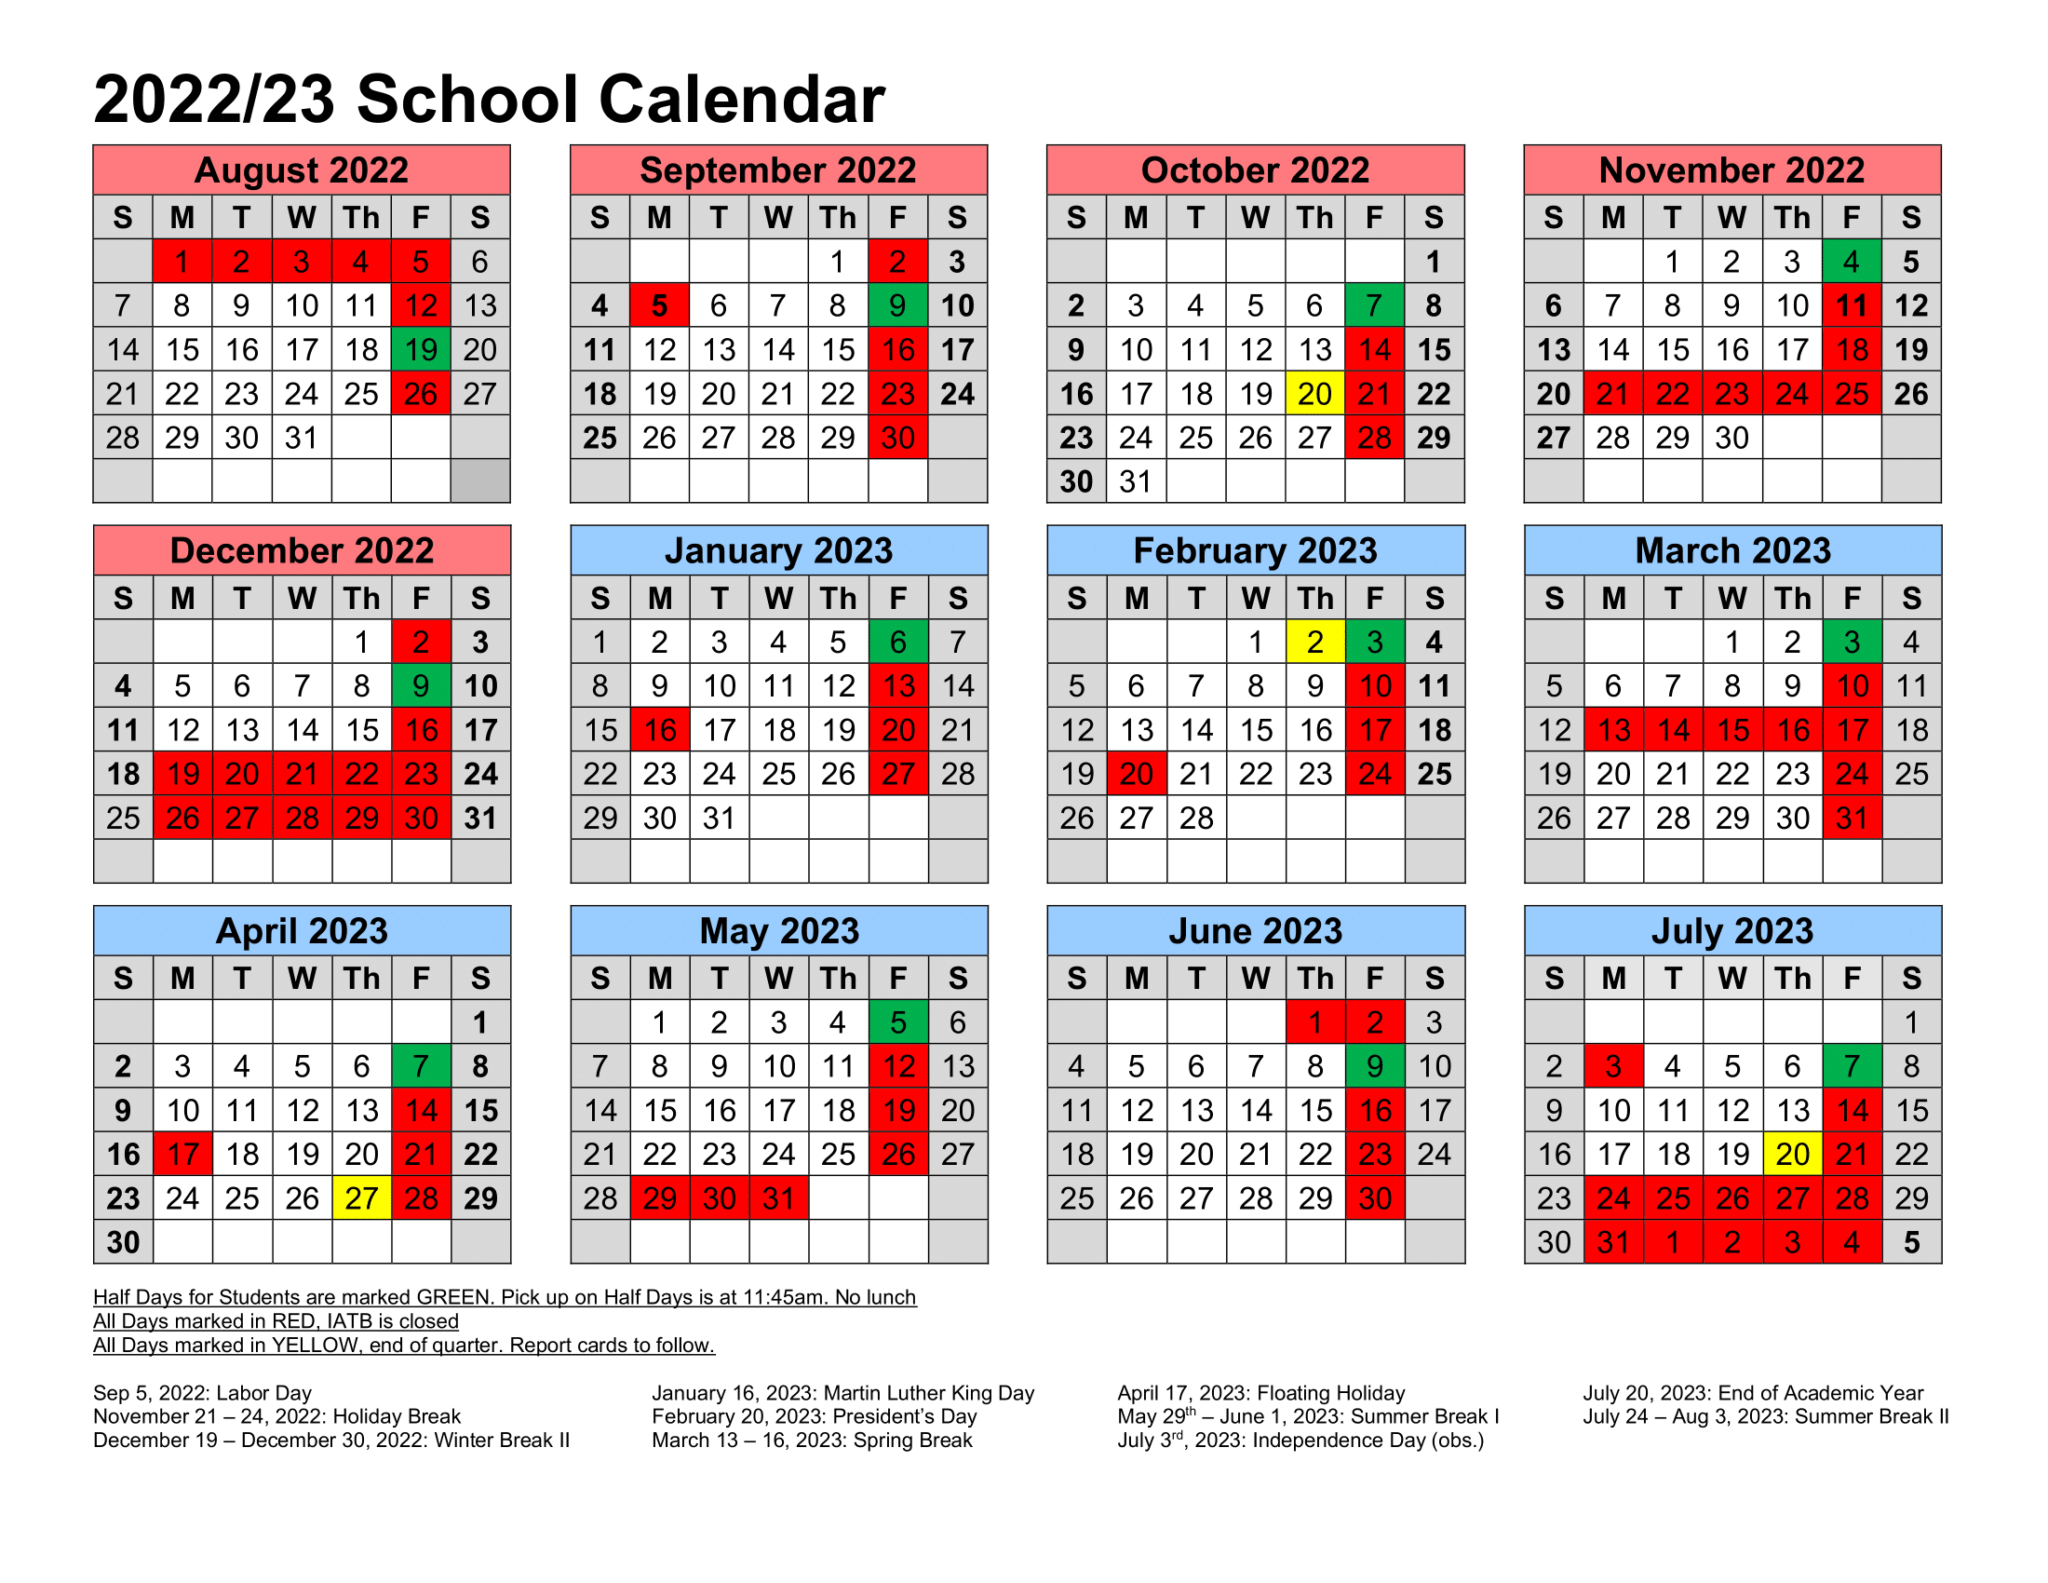 2022-2023-calendar-invictus-academy-tampa-bay